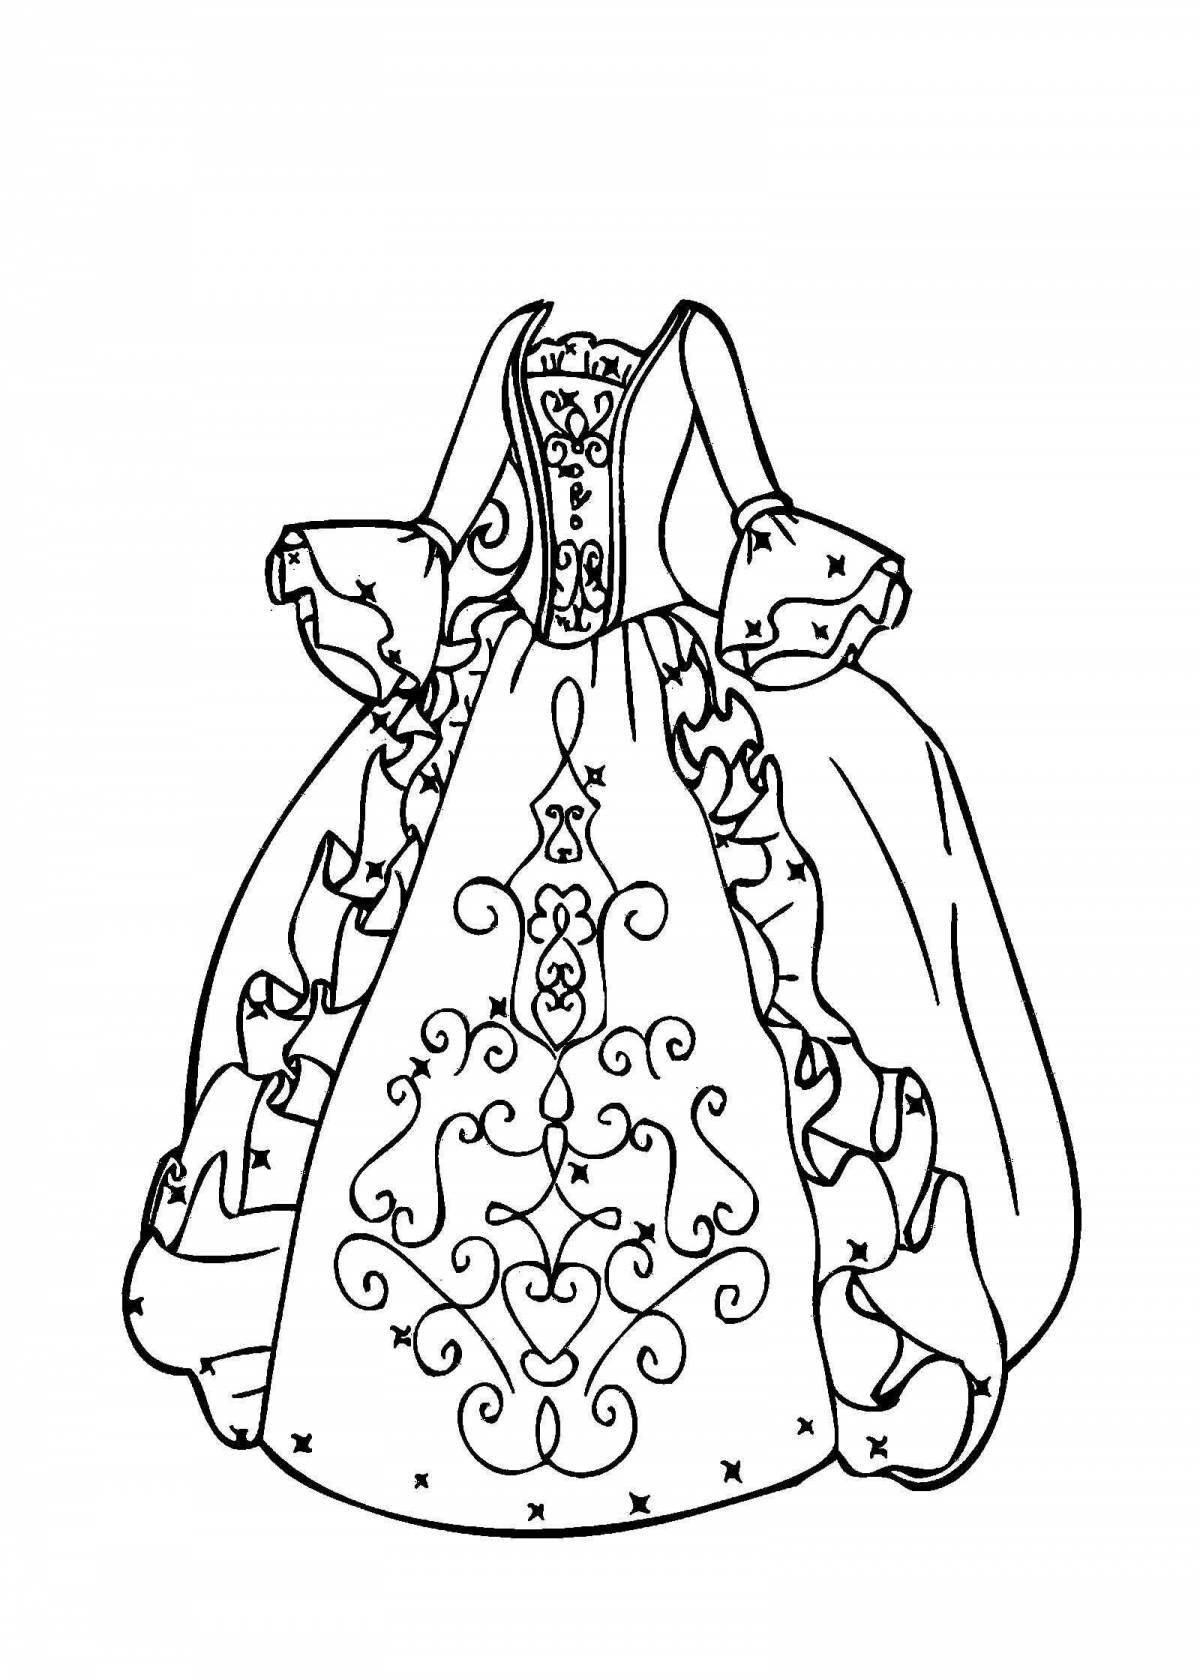 Страница раскраски богато украшенного платья для детей 5-6 лет